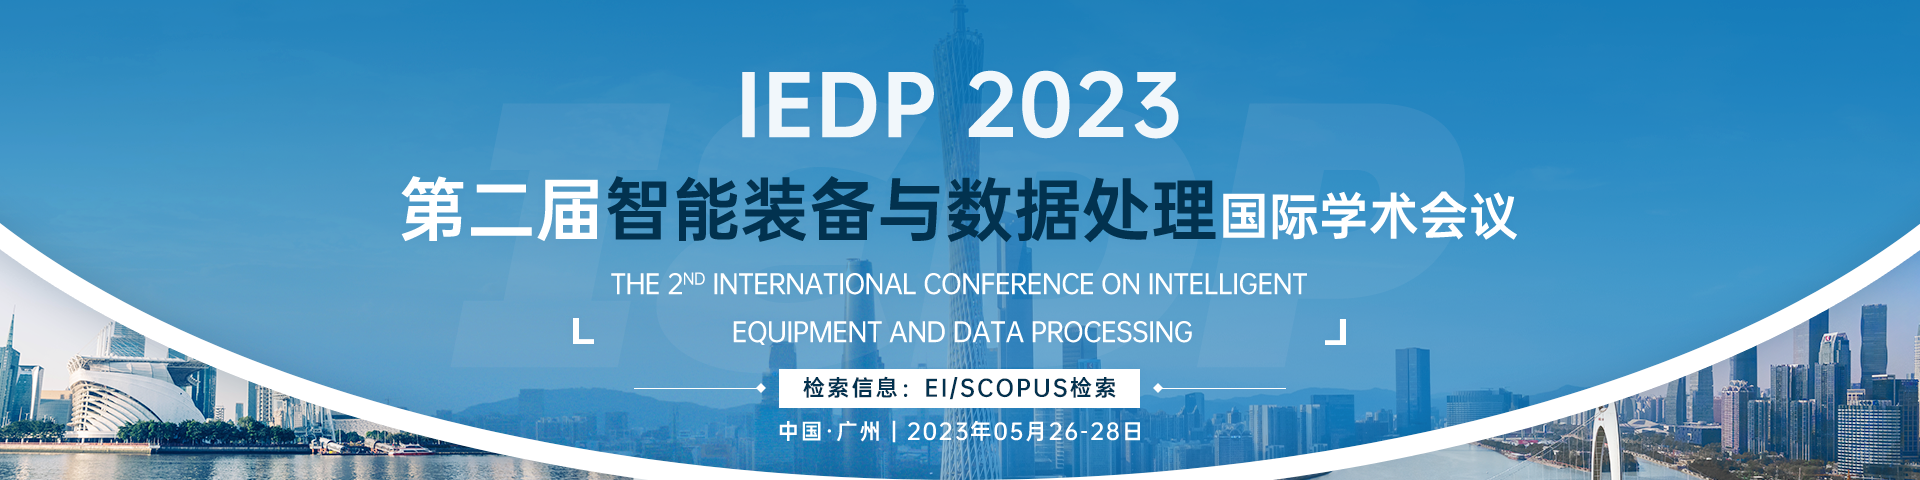 5月广州-IEDP 2023会议官网banner3-20221115.png